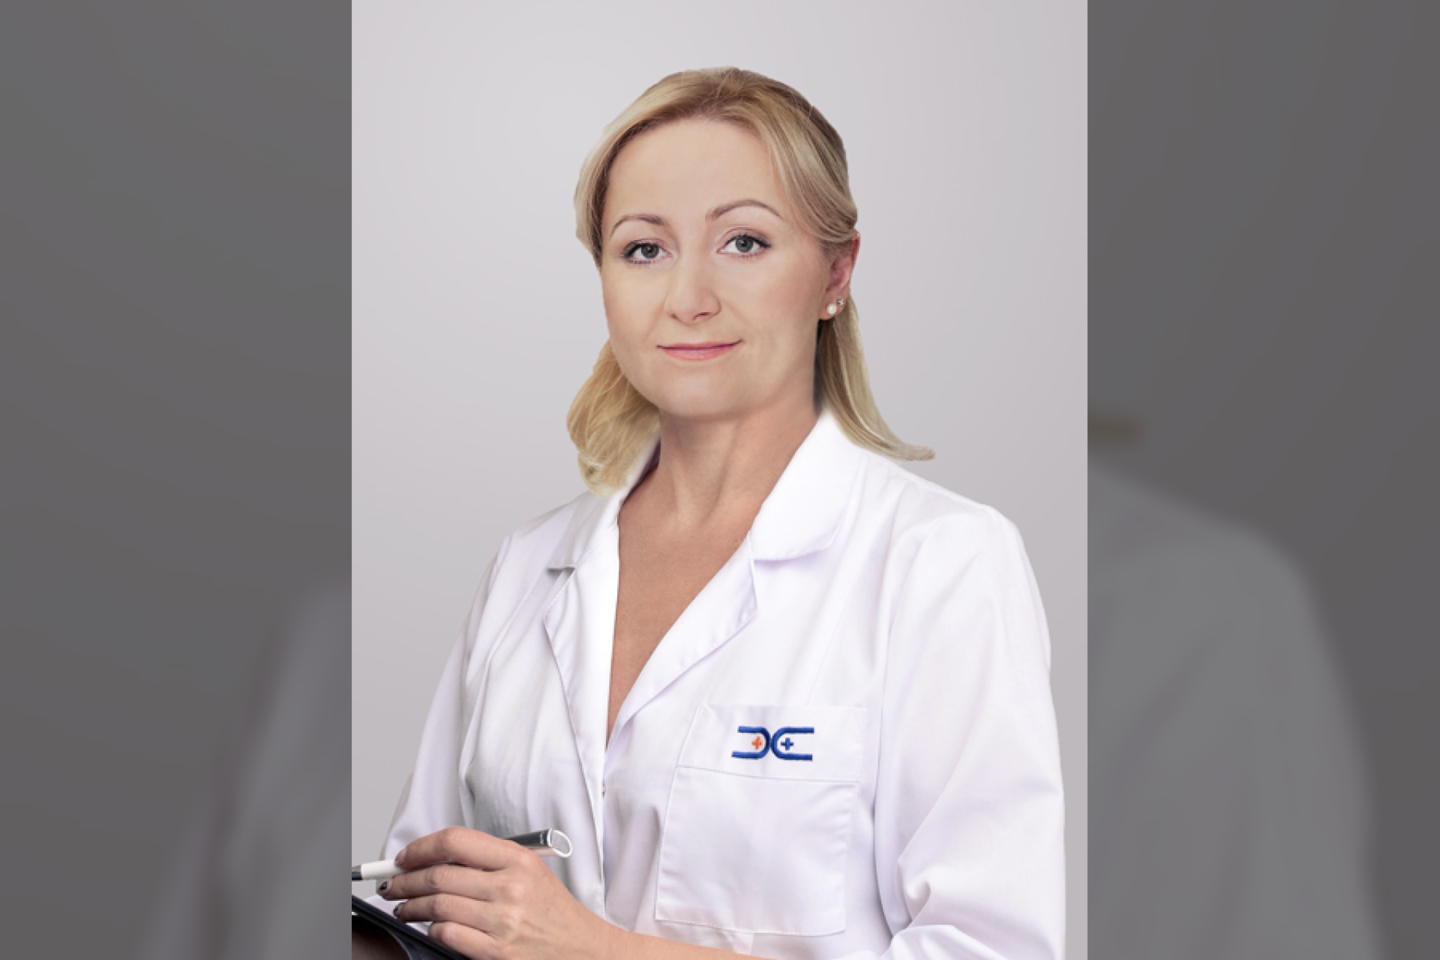 Plastinės ir rekonstrukcinės chirurgijos gydytoja Jelena Romanova-Paškevič<br>Pranešimo siuntėjų nuotr.